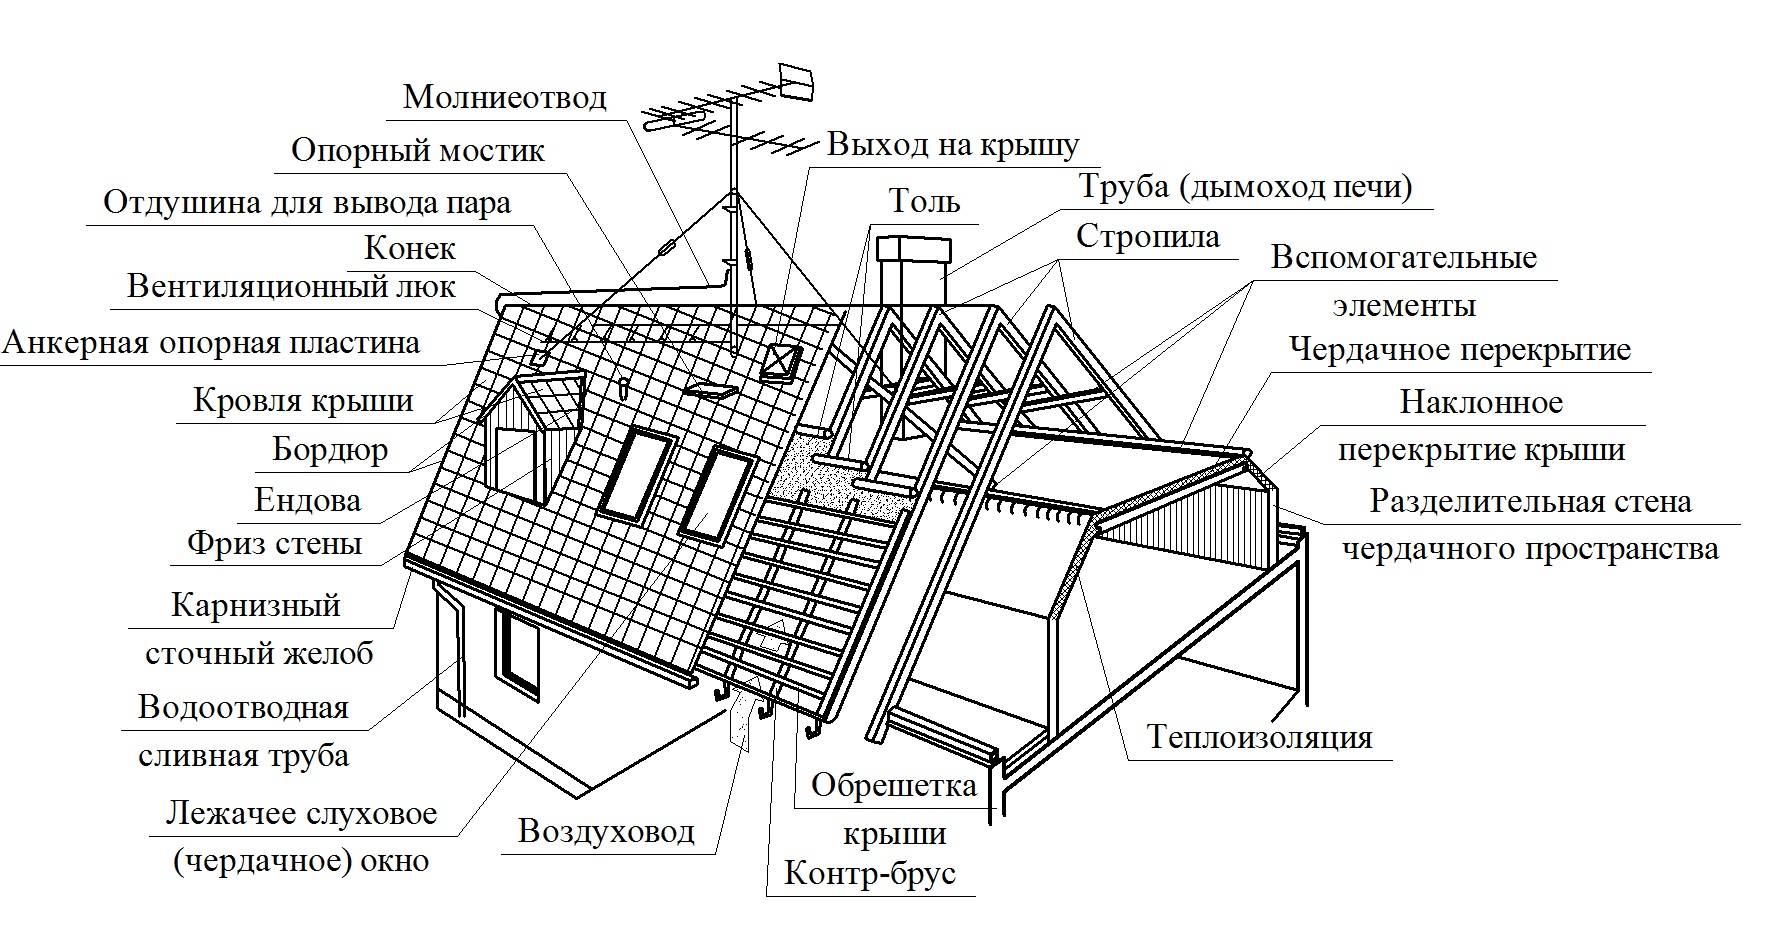 Конструктивные элементы крыши, устройство стропил